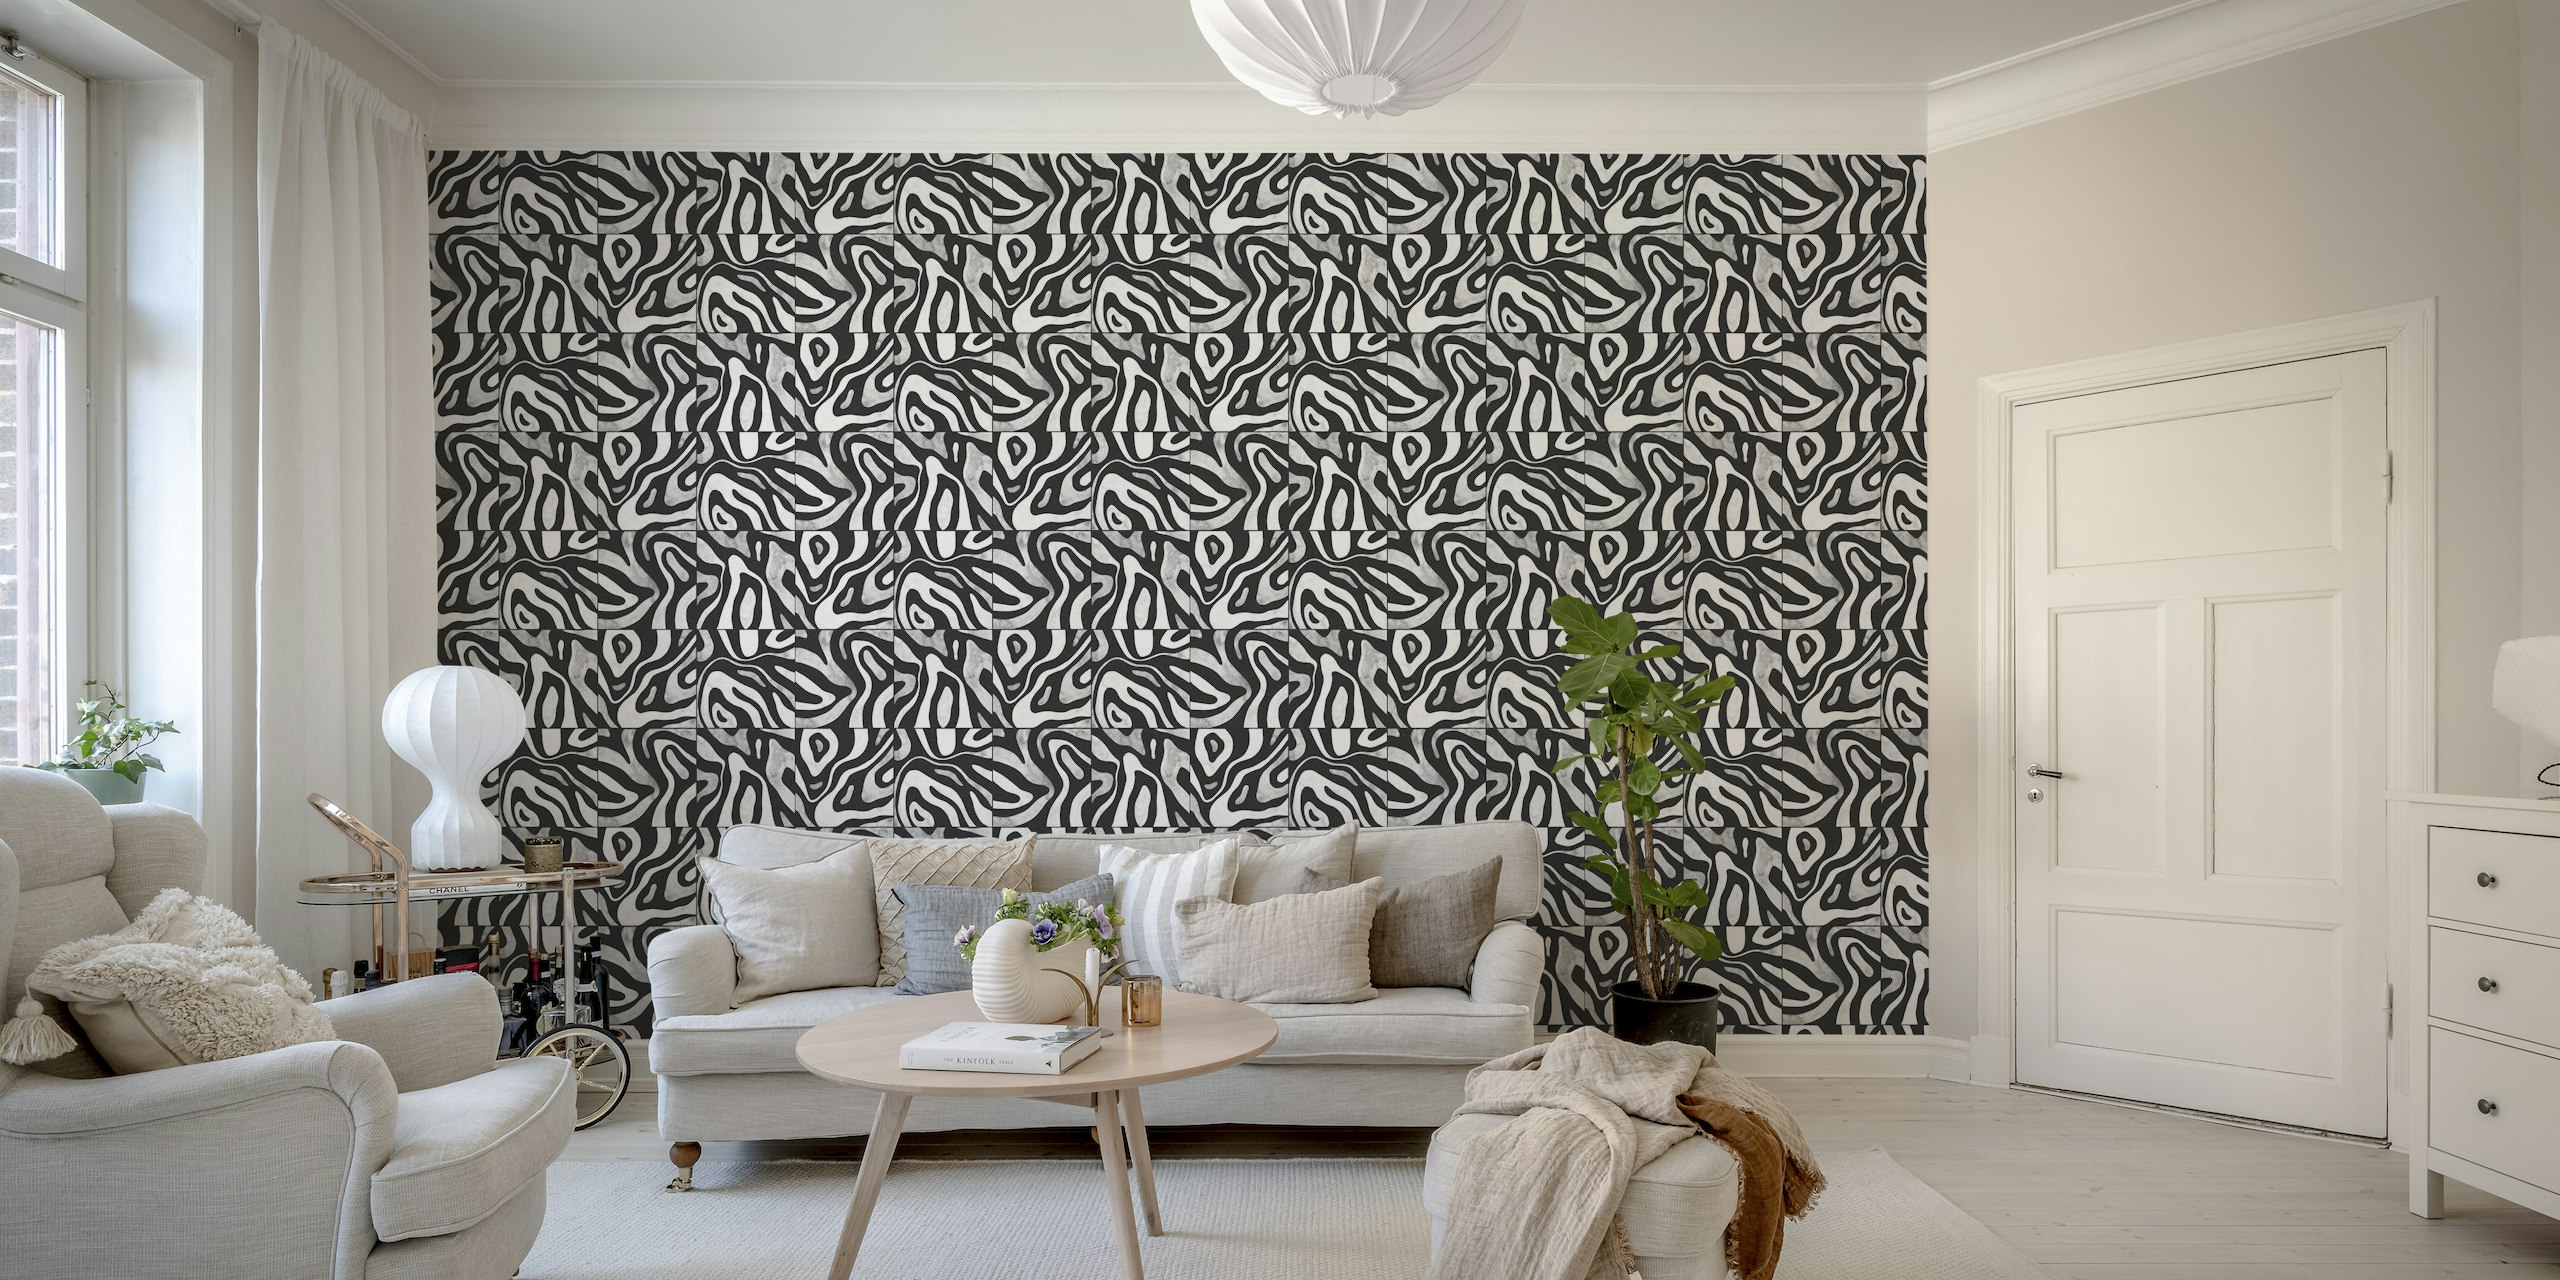 Fotomural abstrato em preto e branco com um padrão que lembra colinas vistas de cima